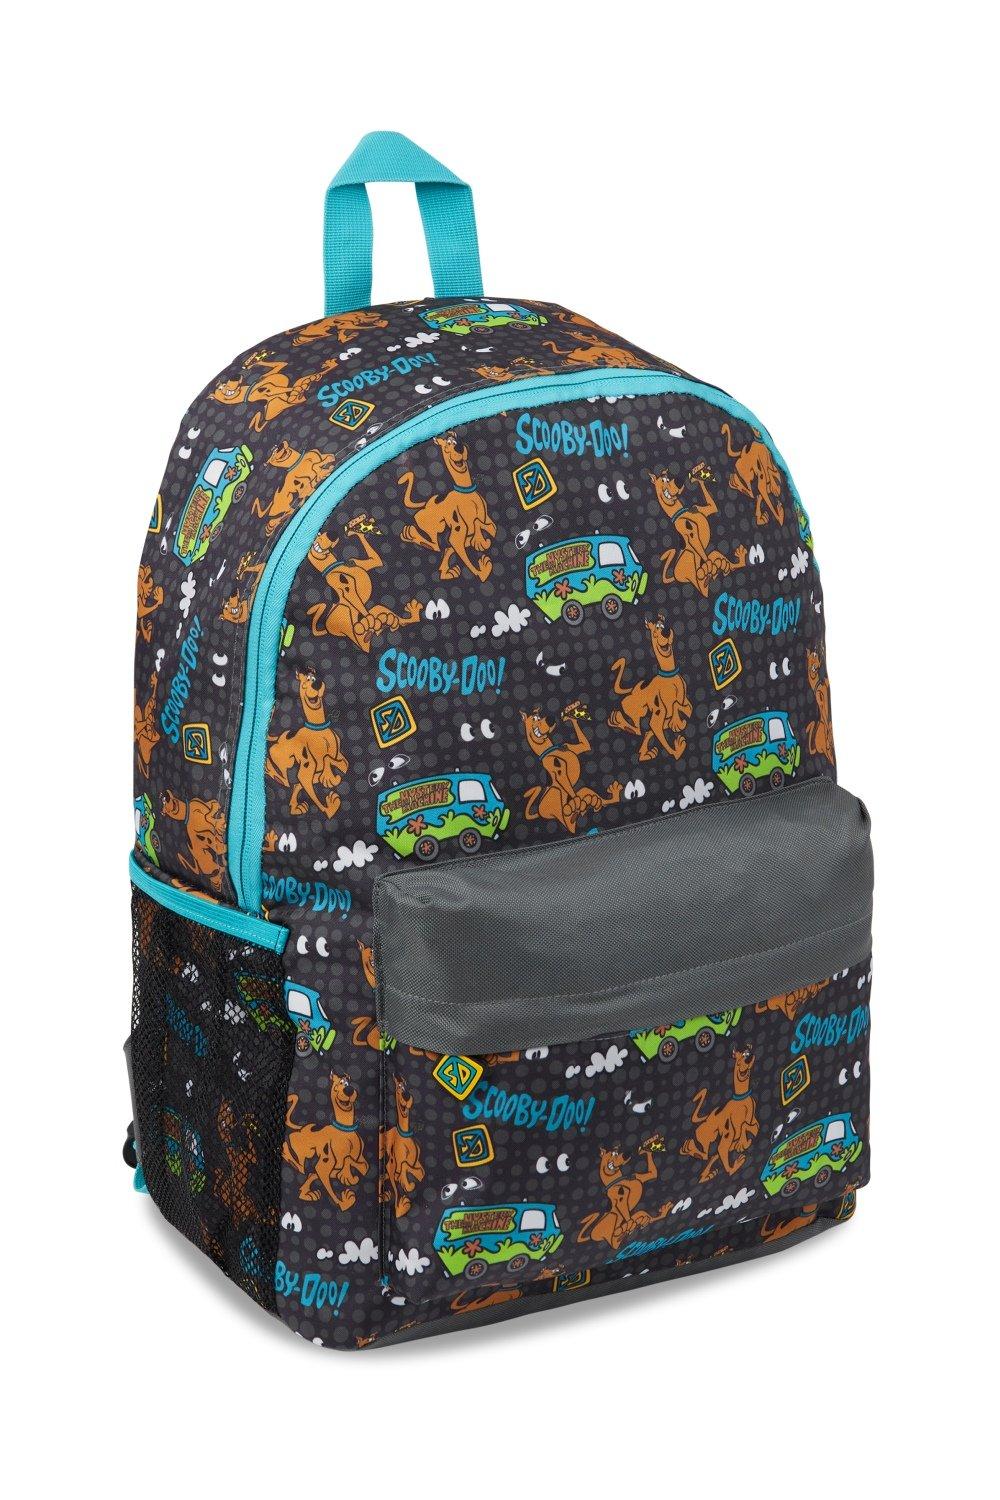 Школьный рюкзак Scooby Doo, мультиколор